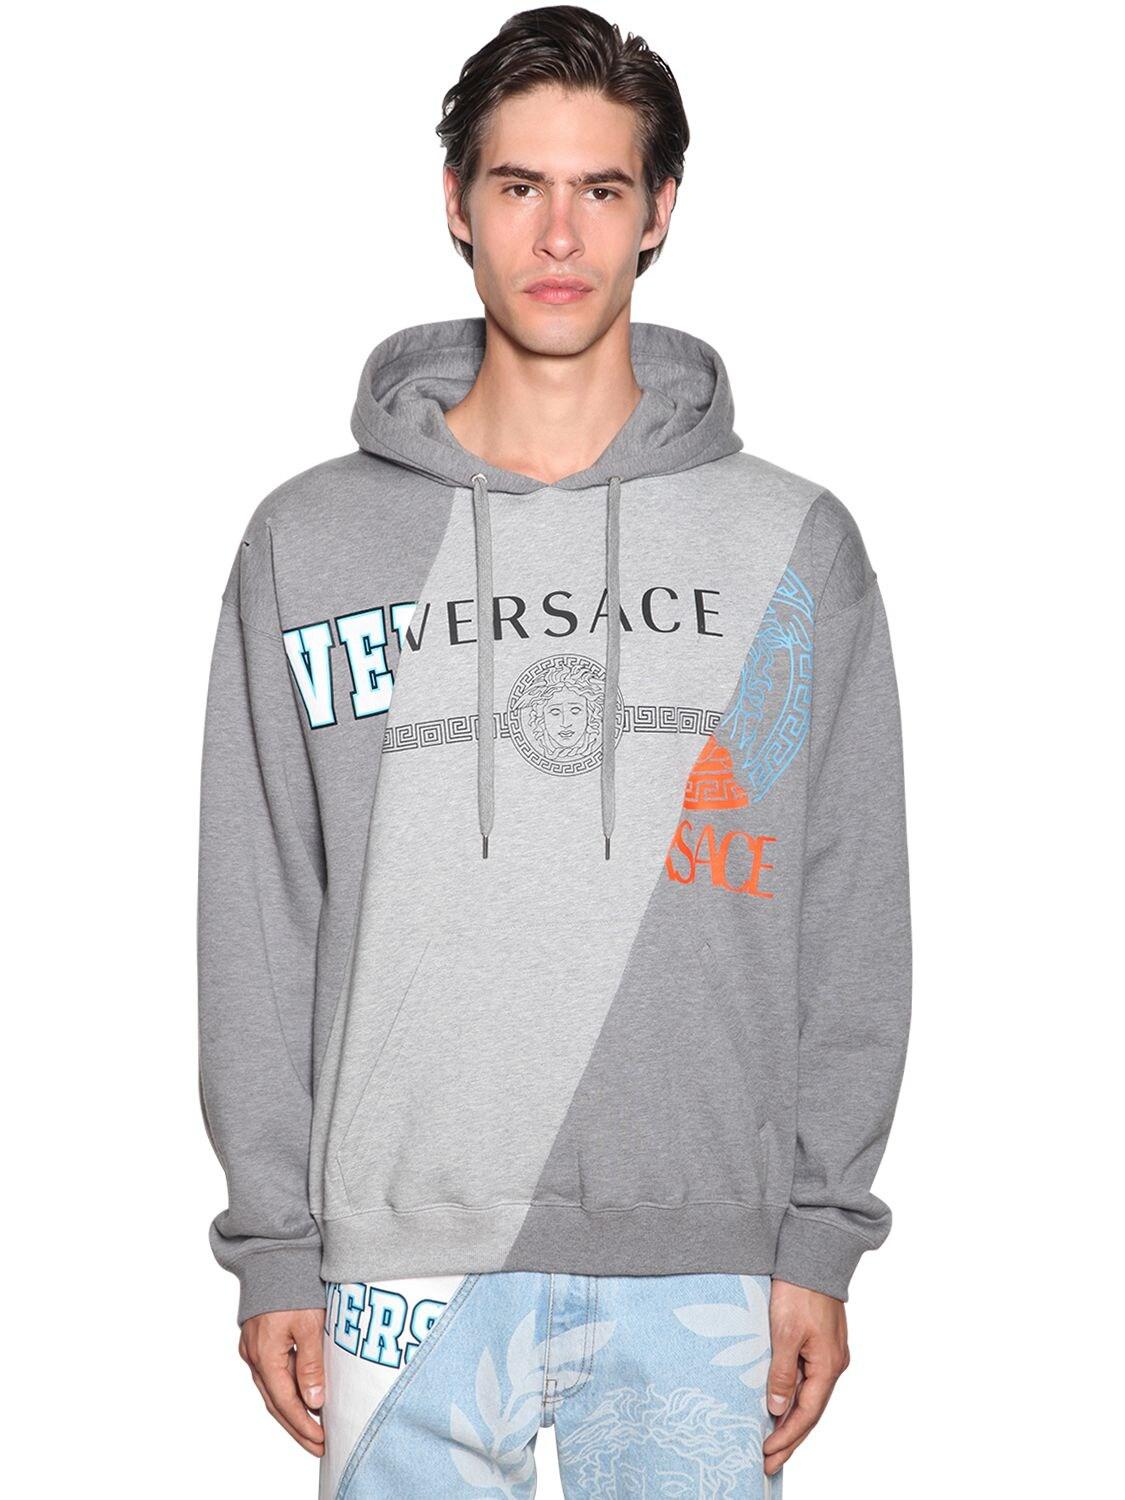 Versace Hoodie W/ Print in Grey (Gray) for Men - Lyst